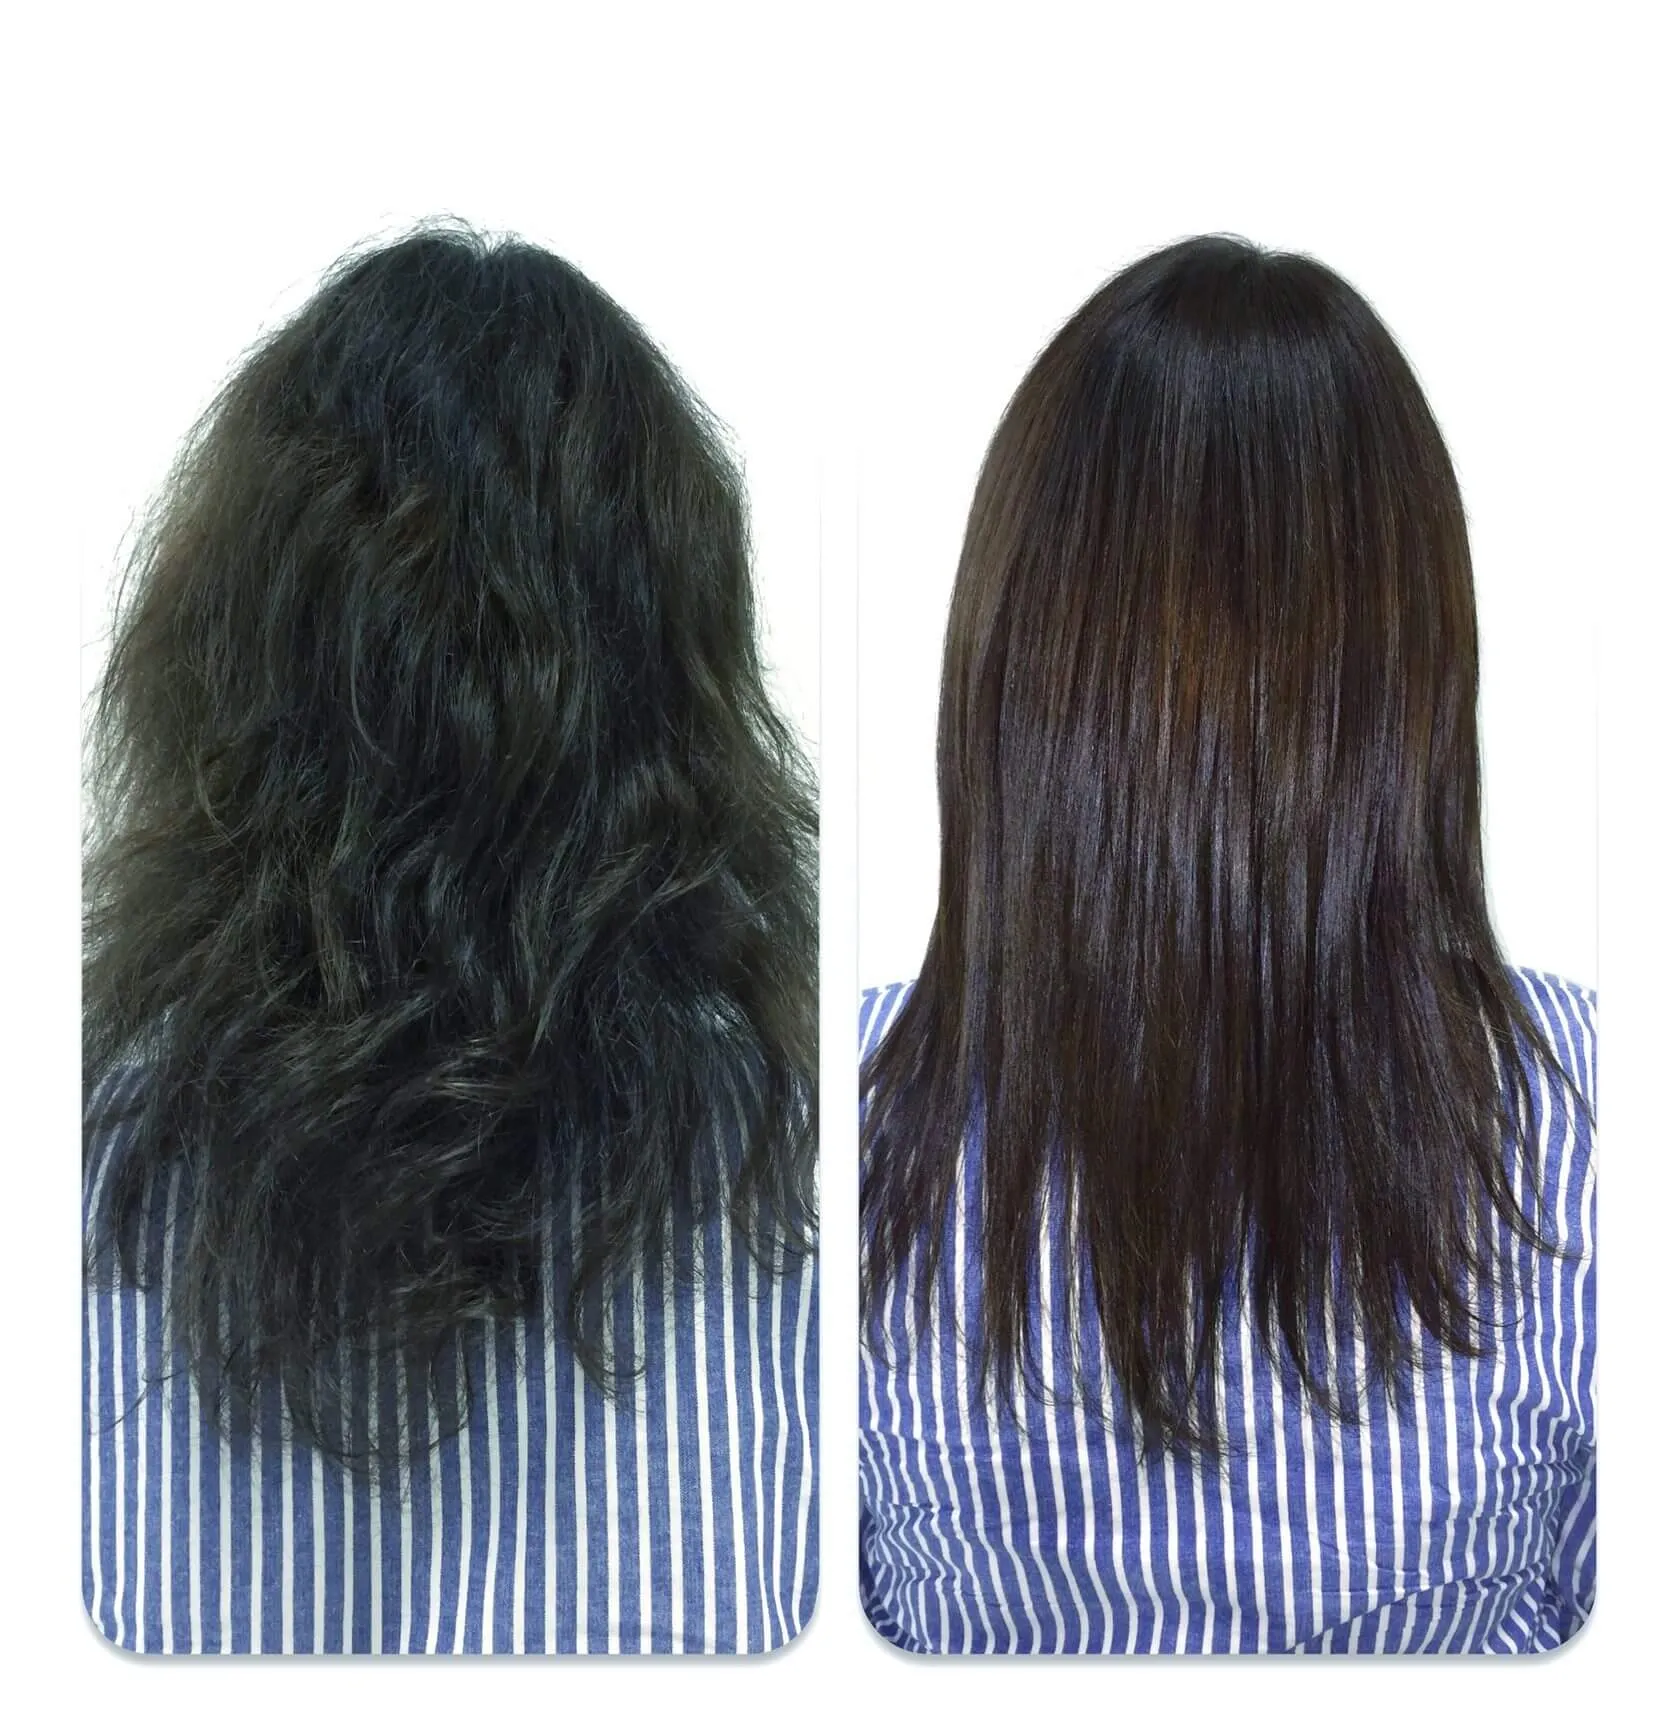 До та після каутеризації волосся